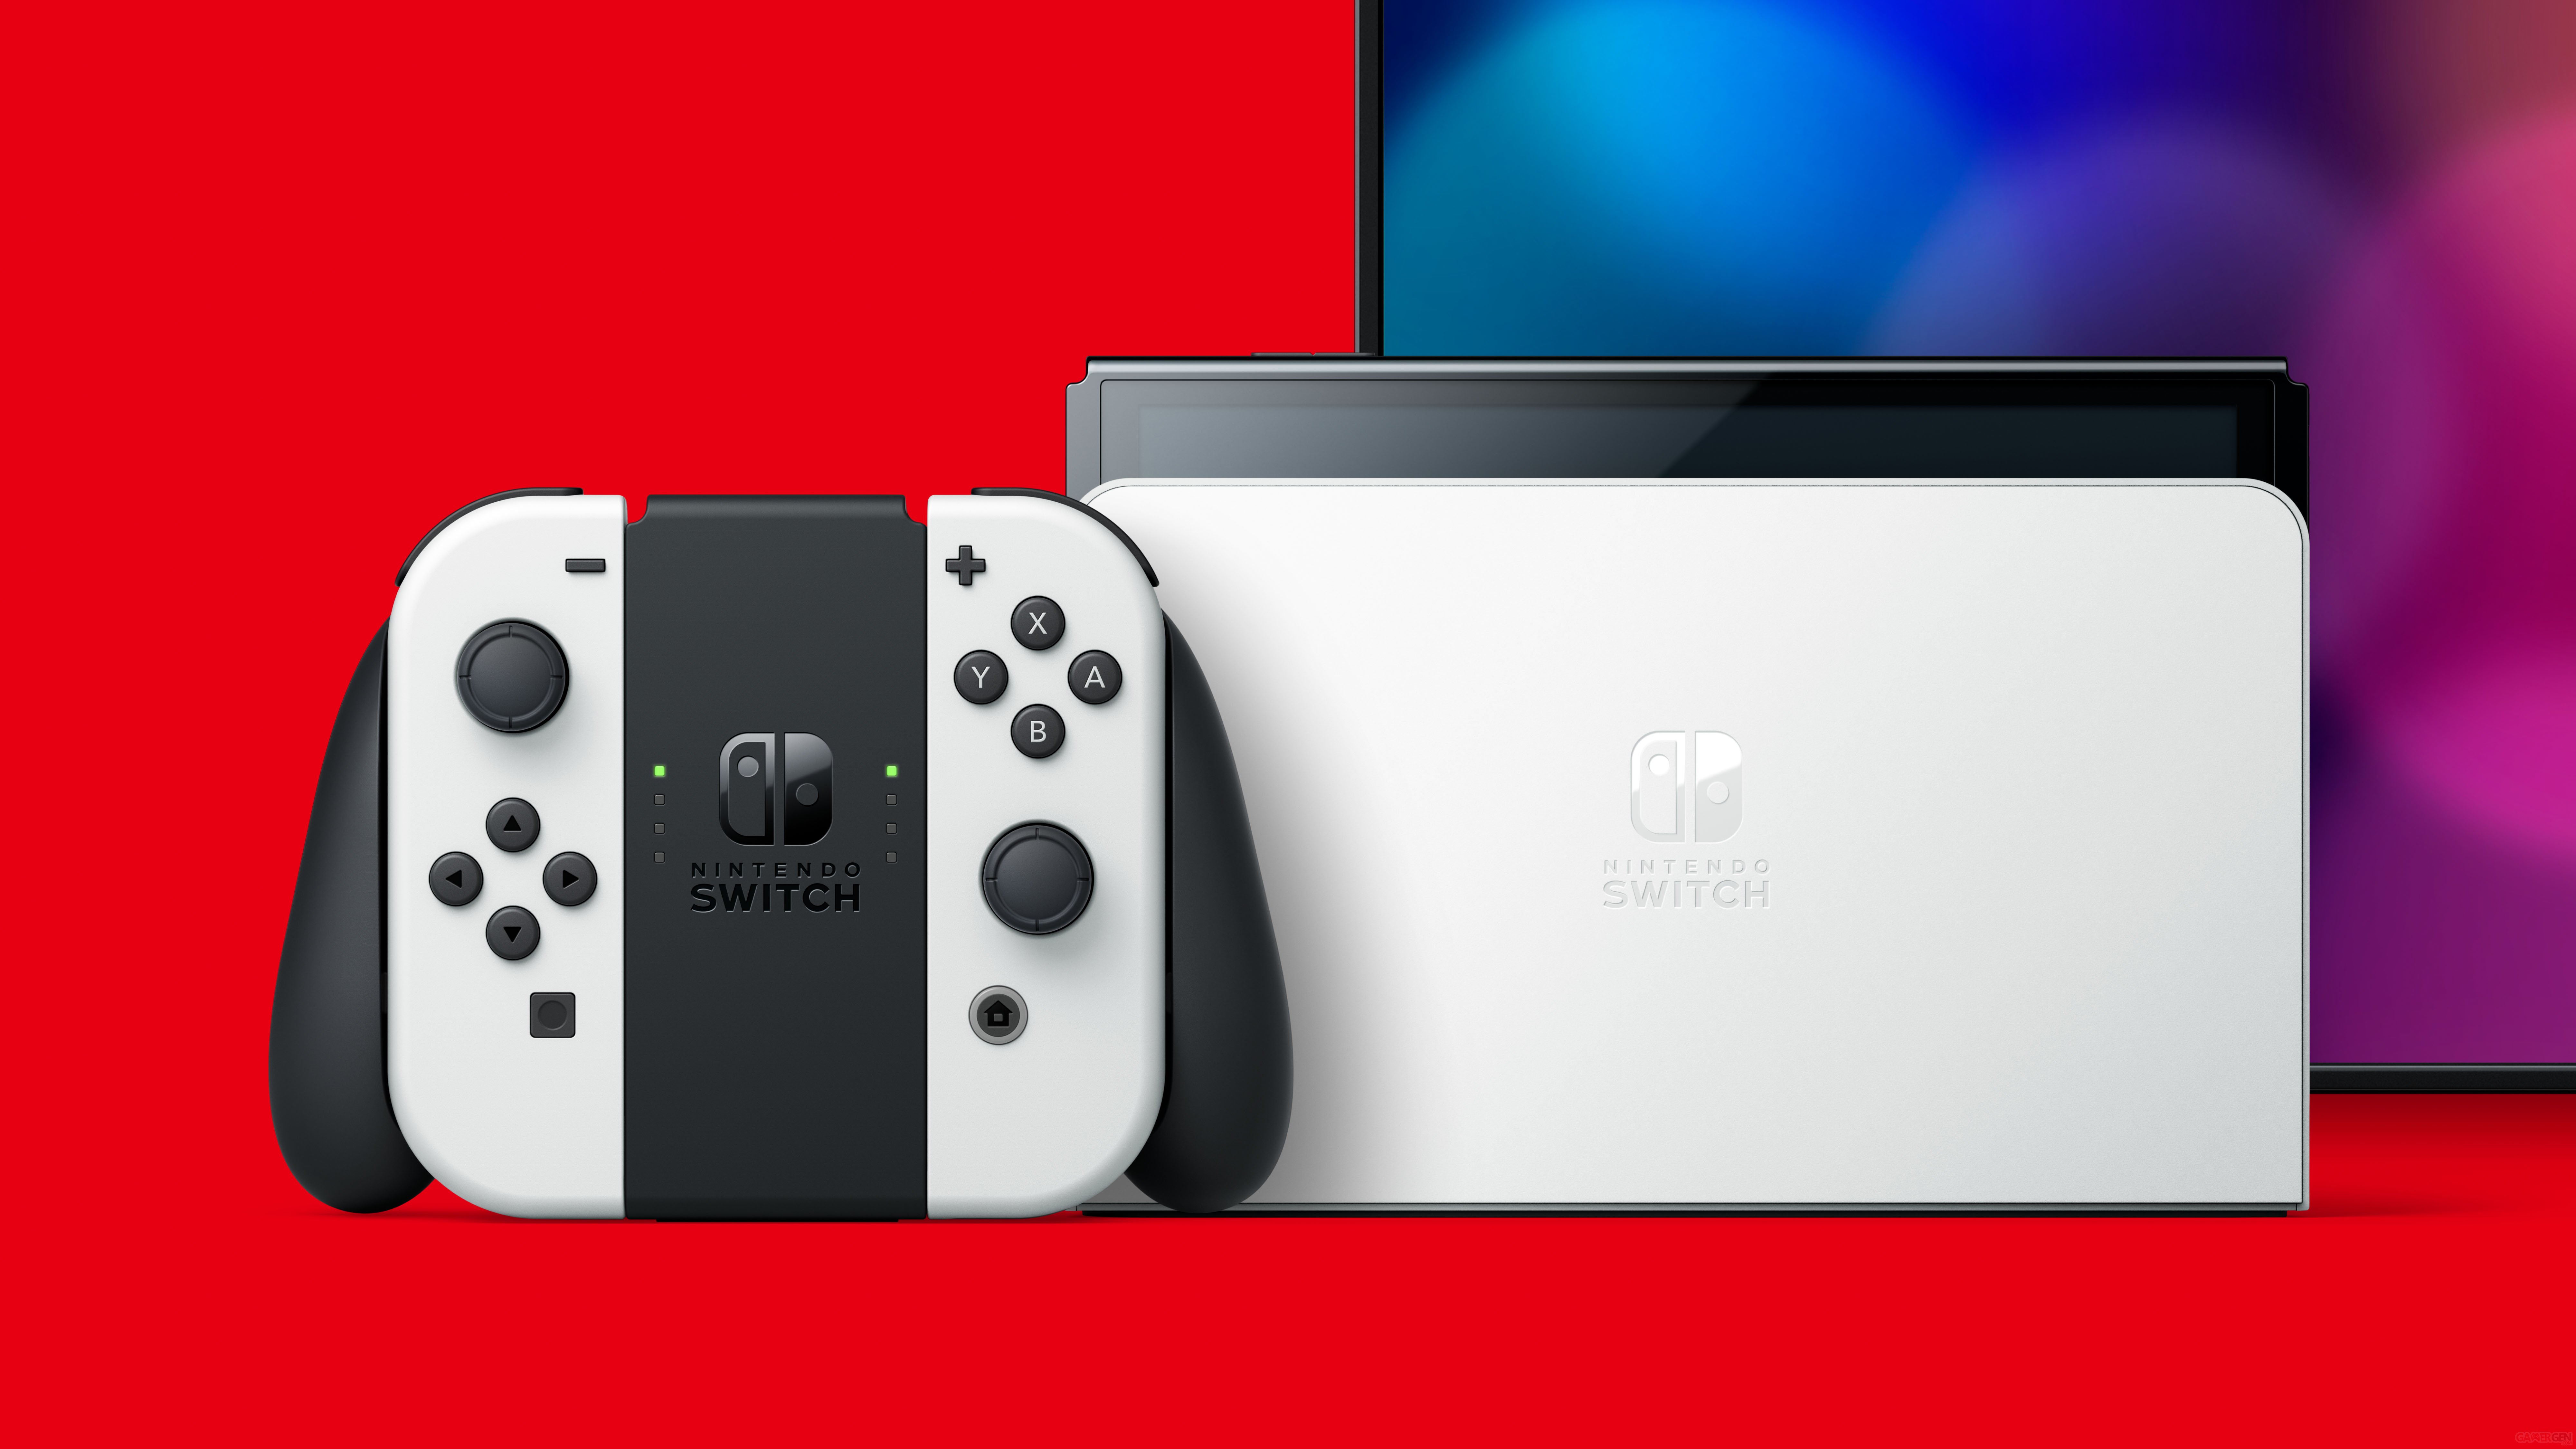 Nintendo Switch (modèle OLED) la nouvelle console officialisée, avec